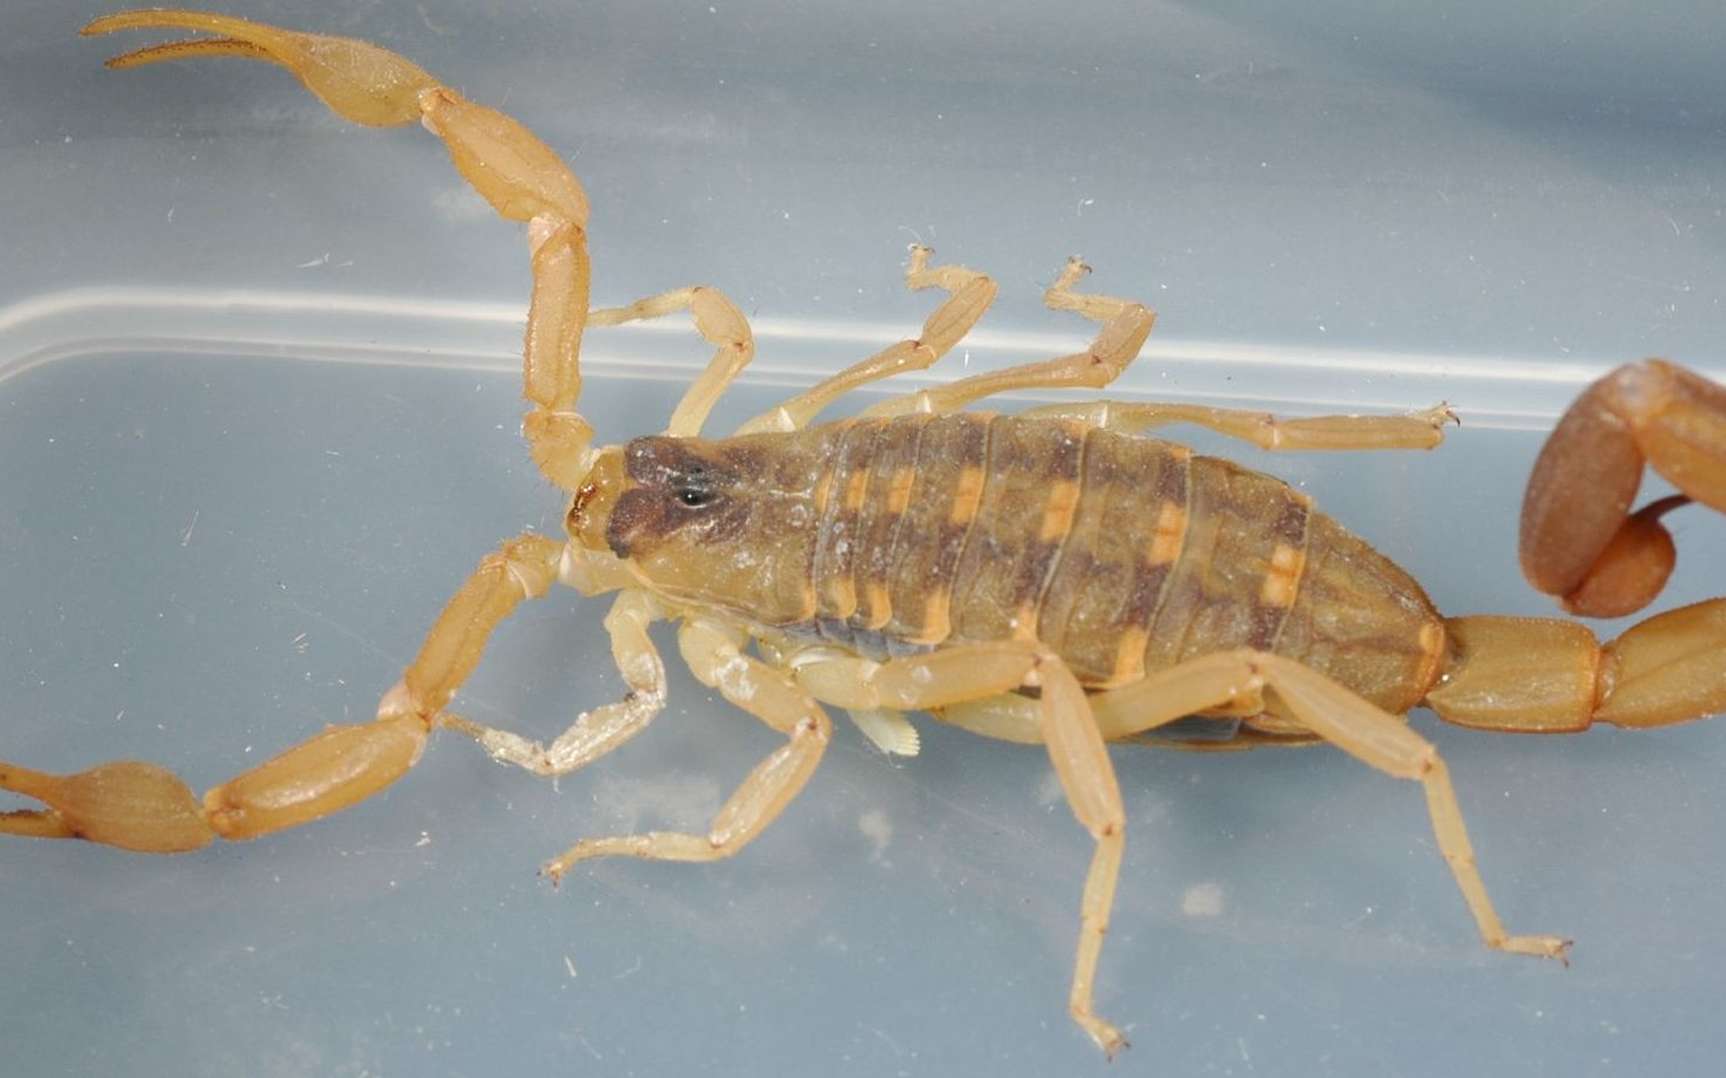 Centruroides vittatus, à l’image, est un scorpion commun dans le sud des États-Unis. © Charles & Clint, Flickr, cc by 2.0